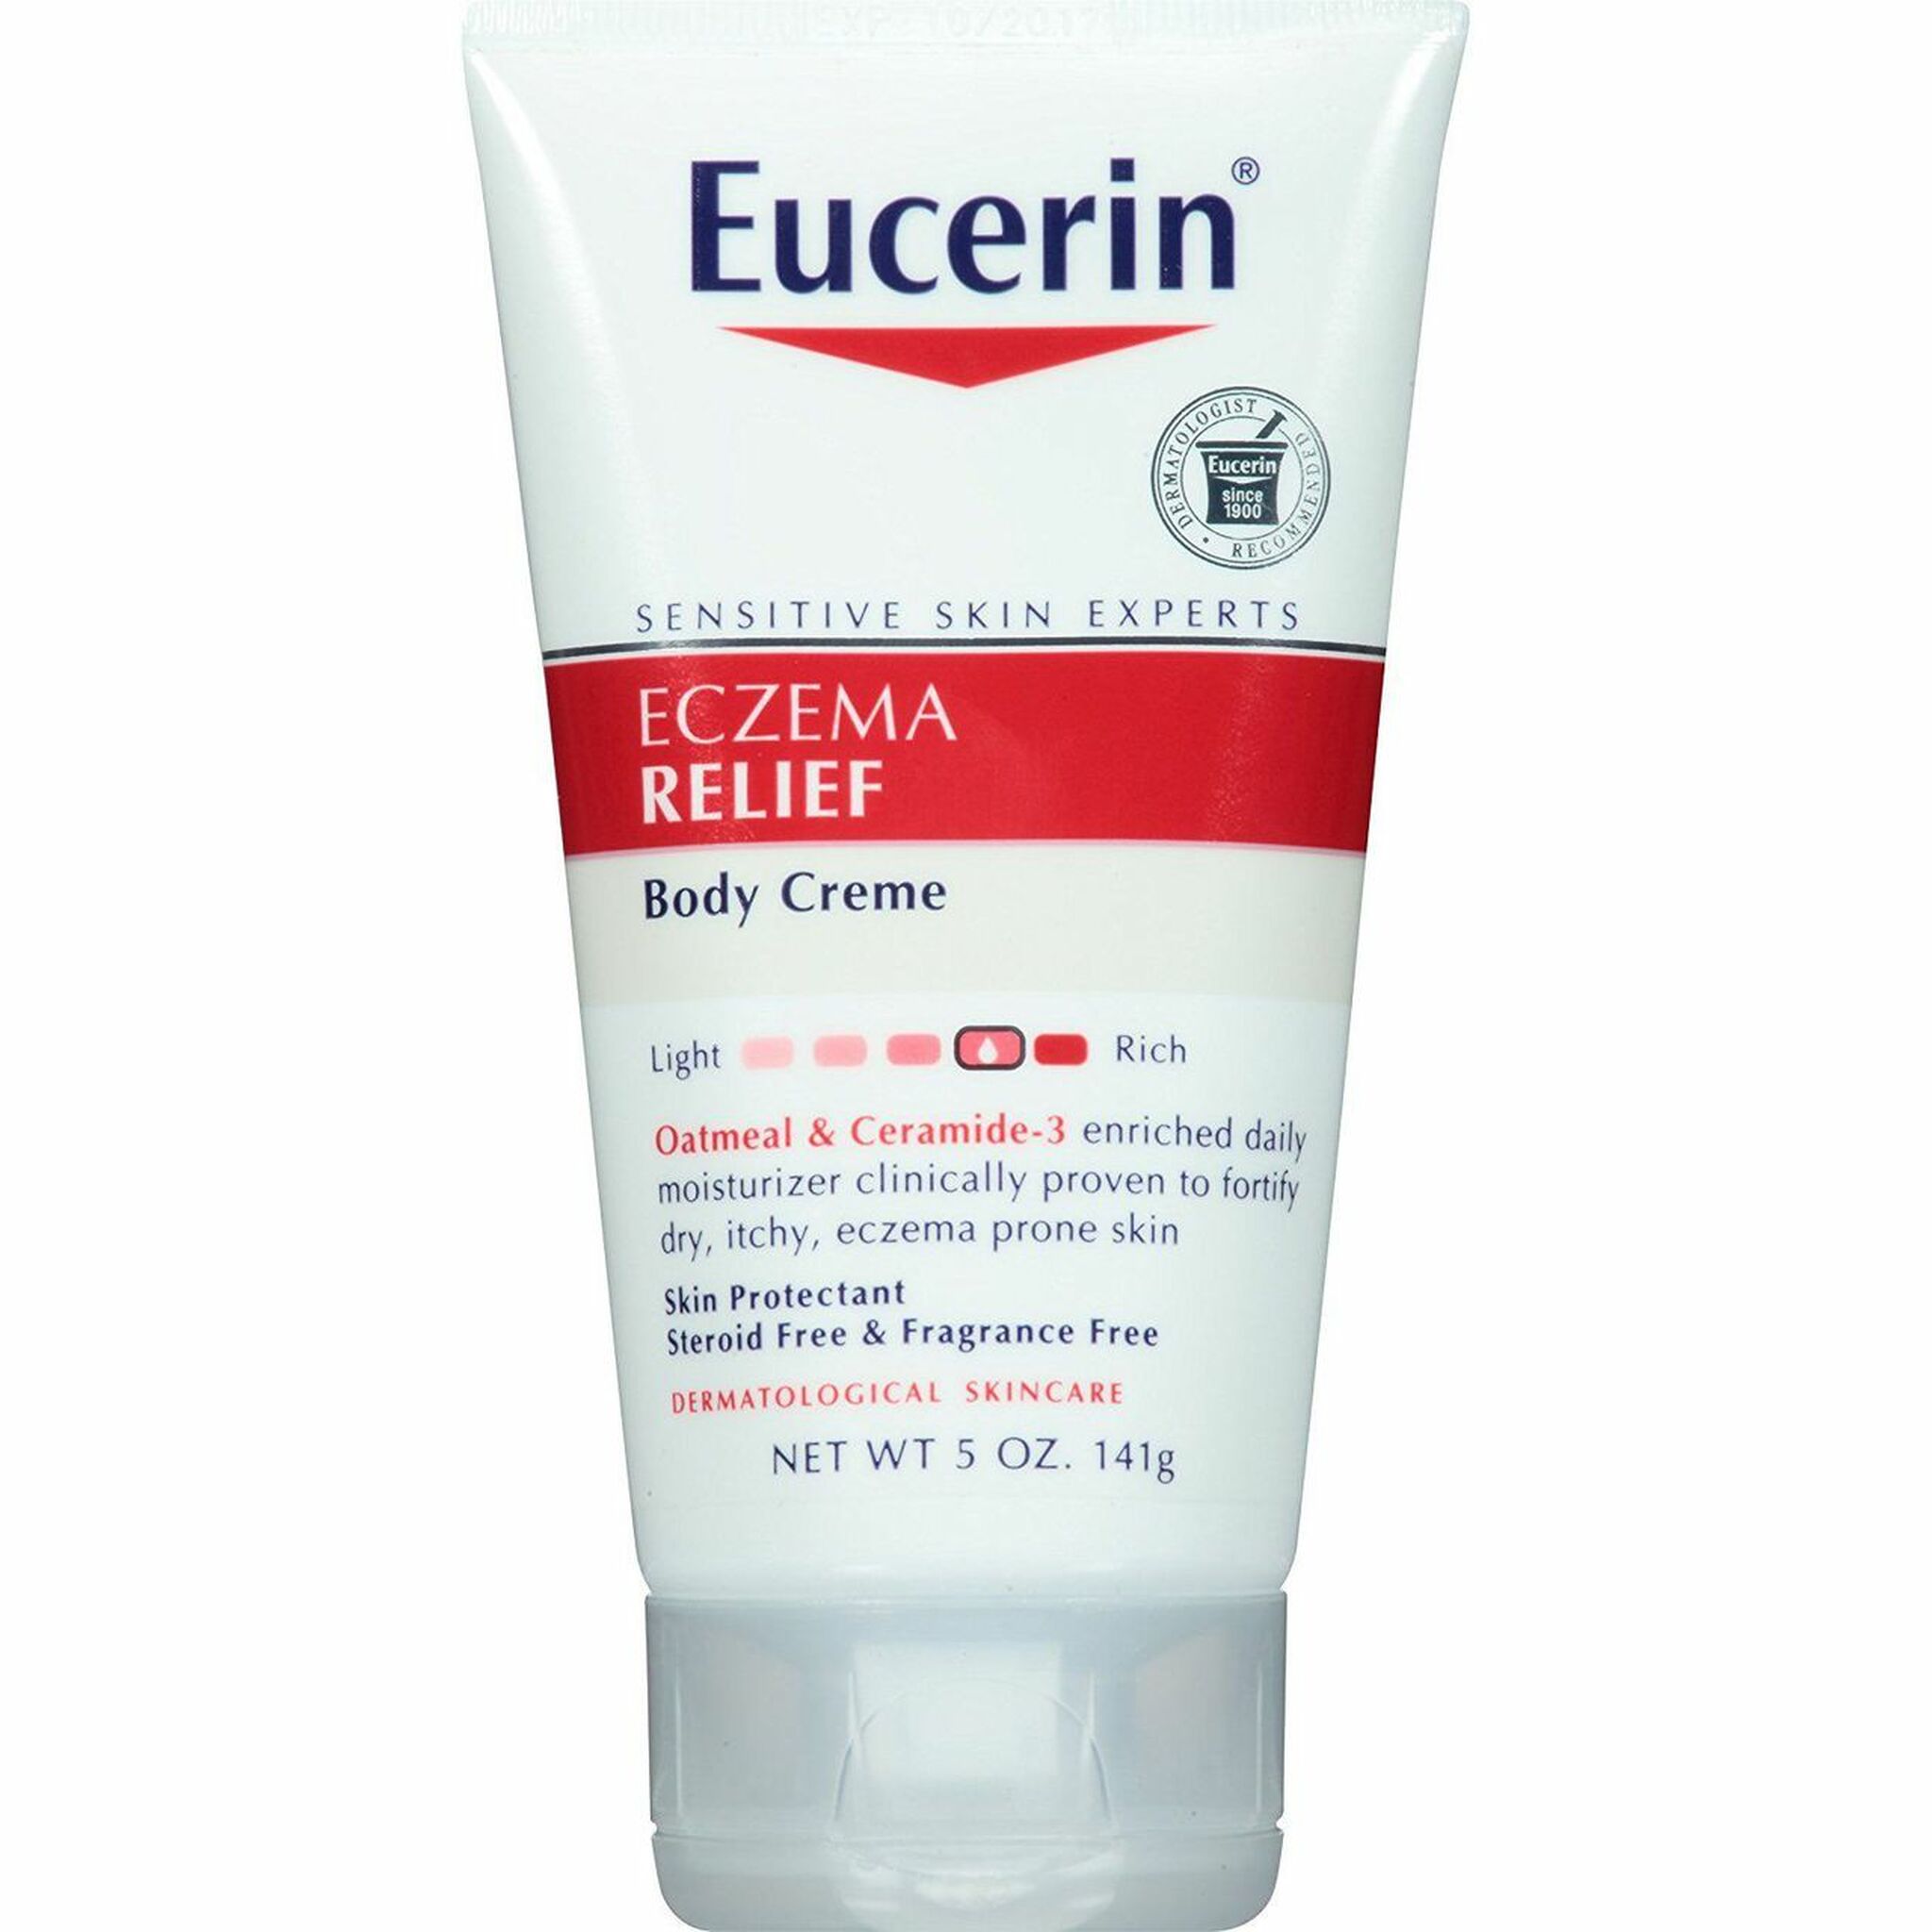 Eucerin Eczema Relief, Body Creme, 5 Oz. Authorized vendor